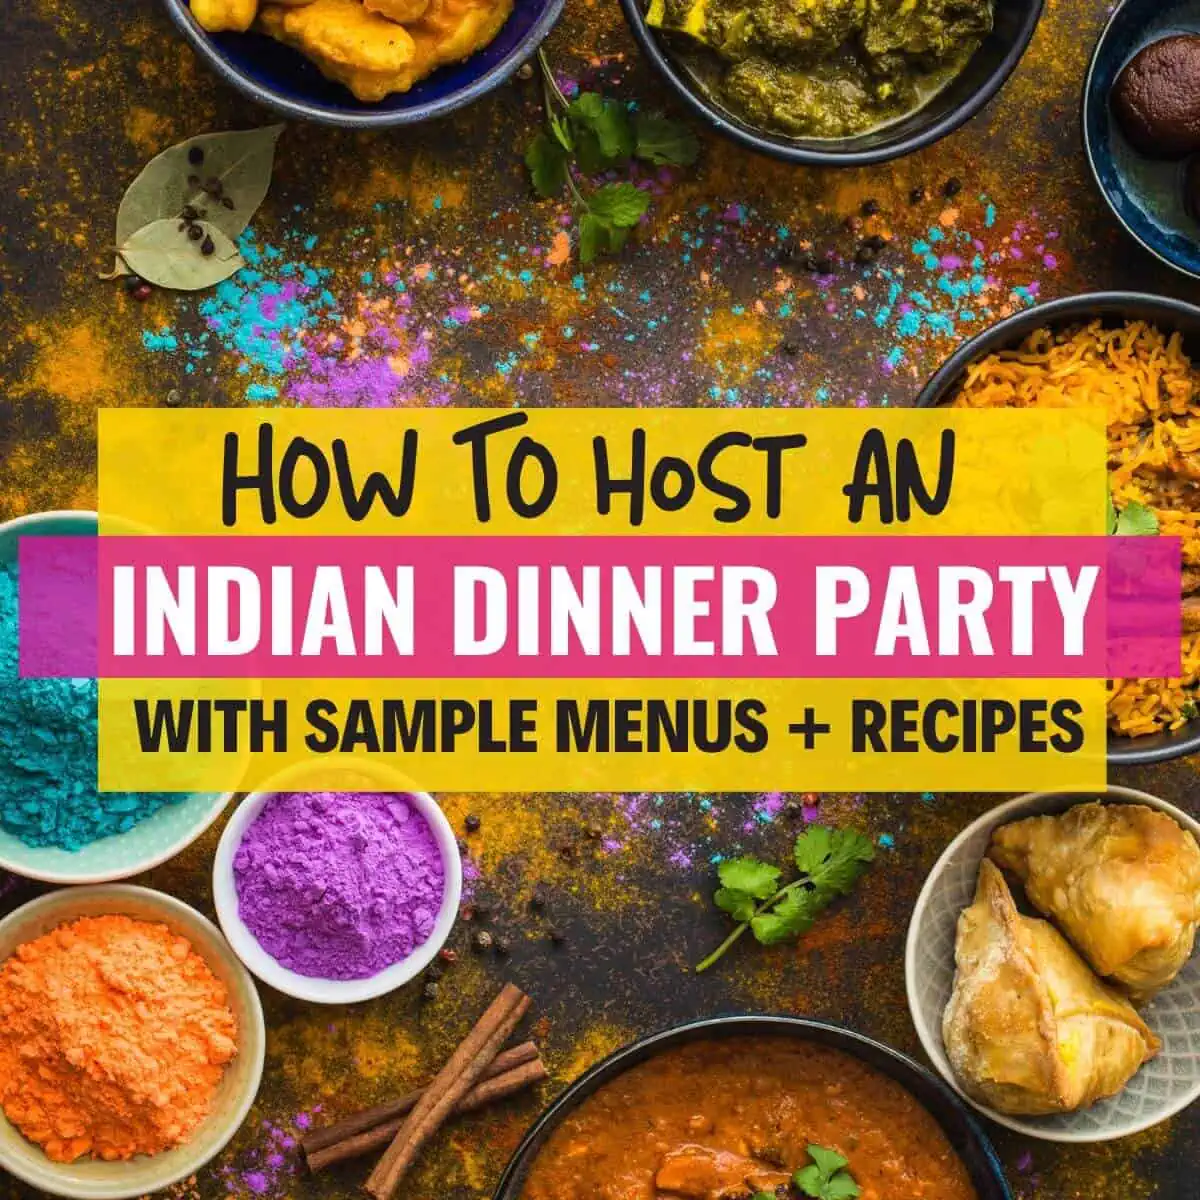 Uma imagem com muita comida indiana e com uma legenda que diz como organizar um jantar indiano - obter ideias de menu e receitas